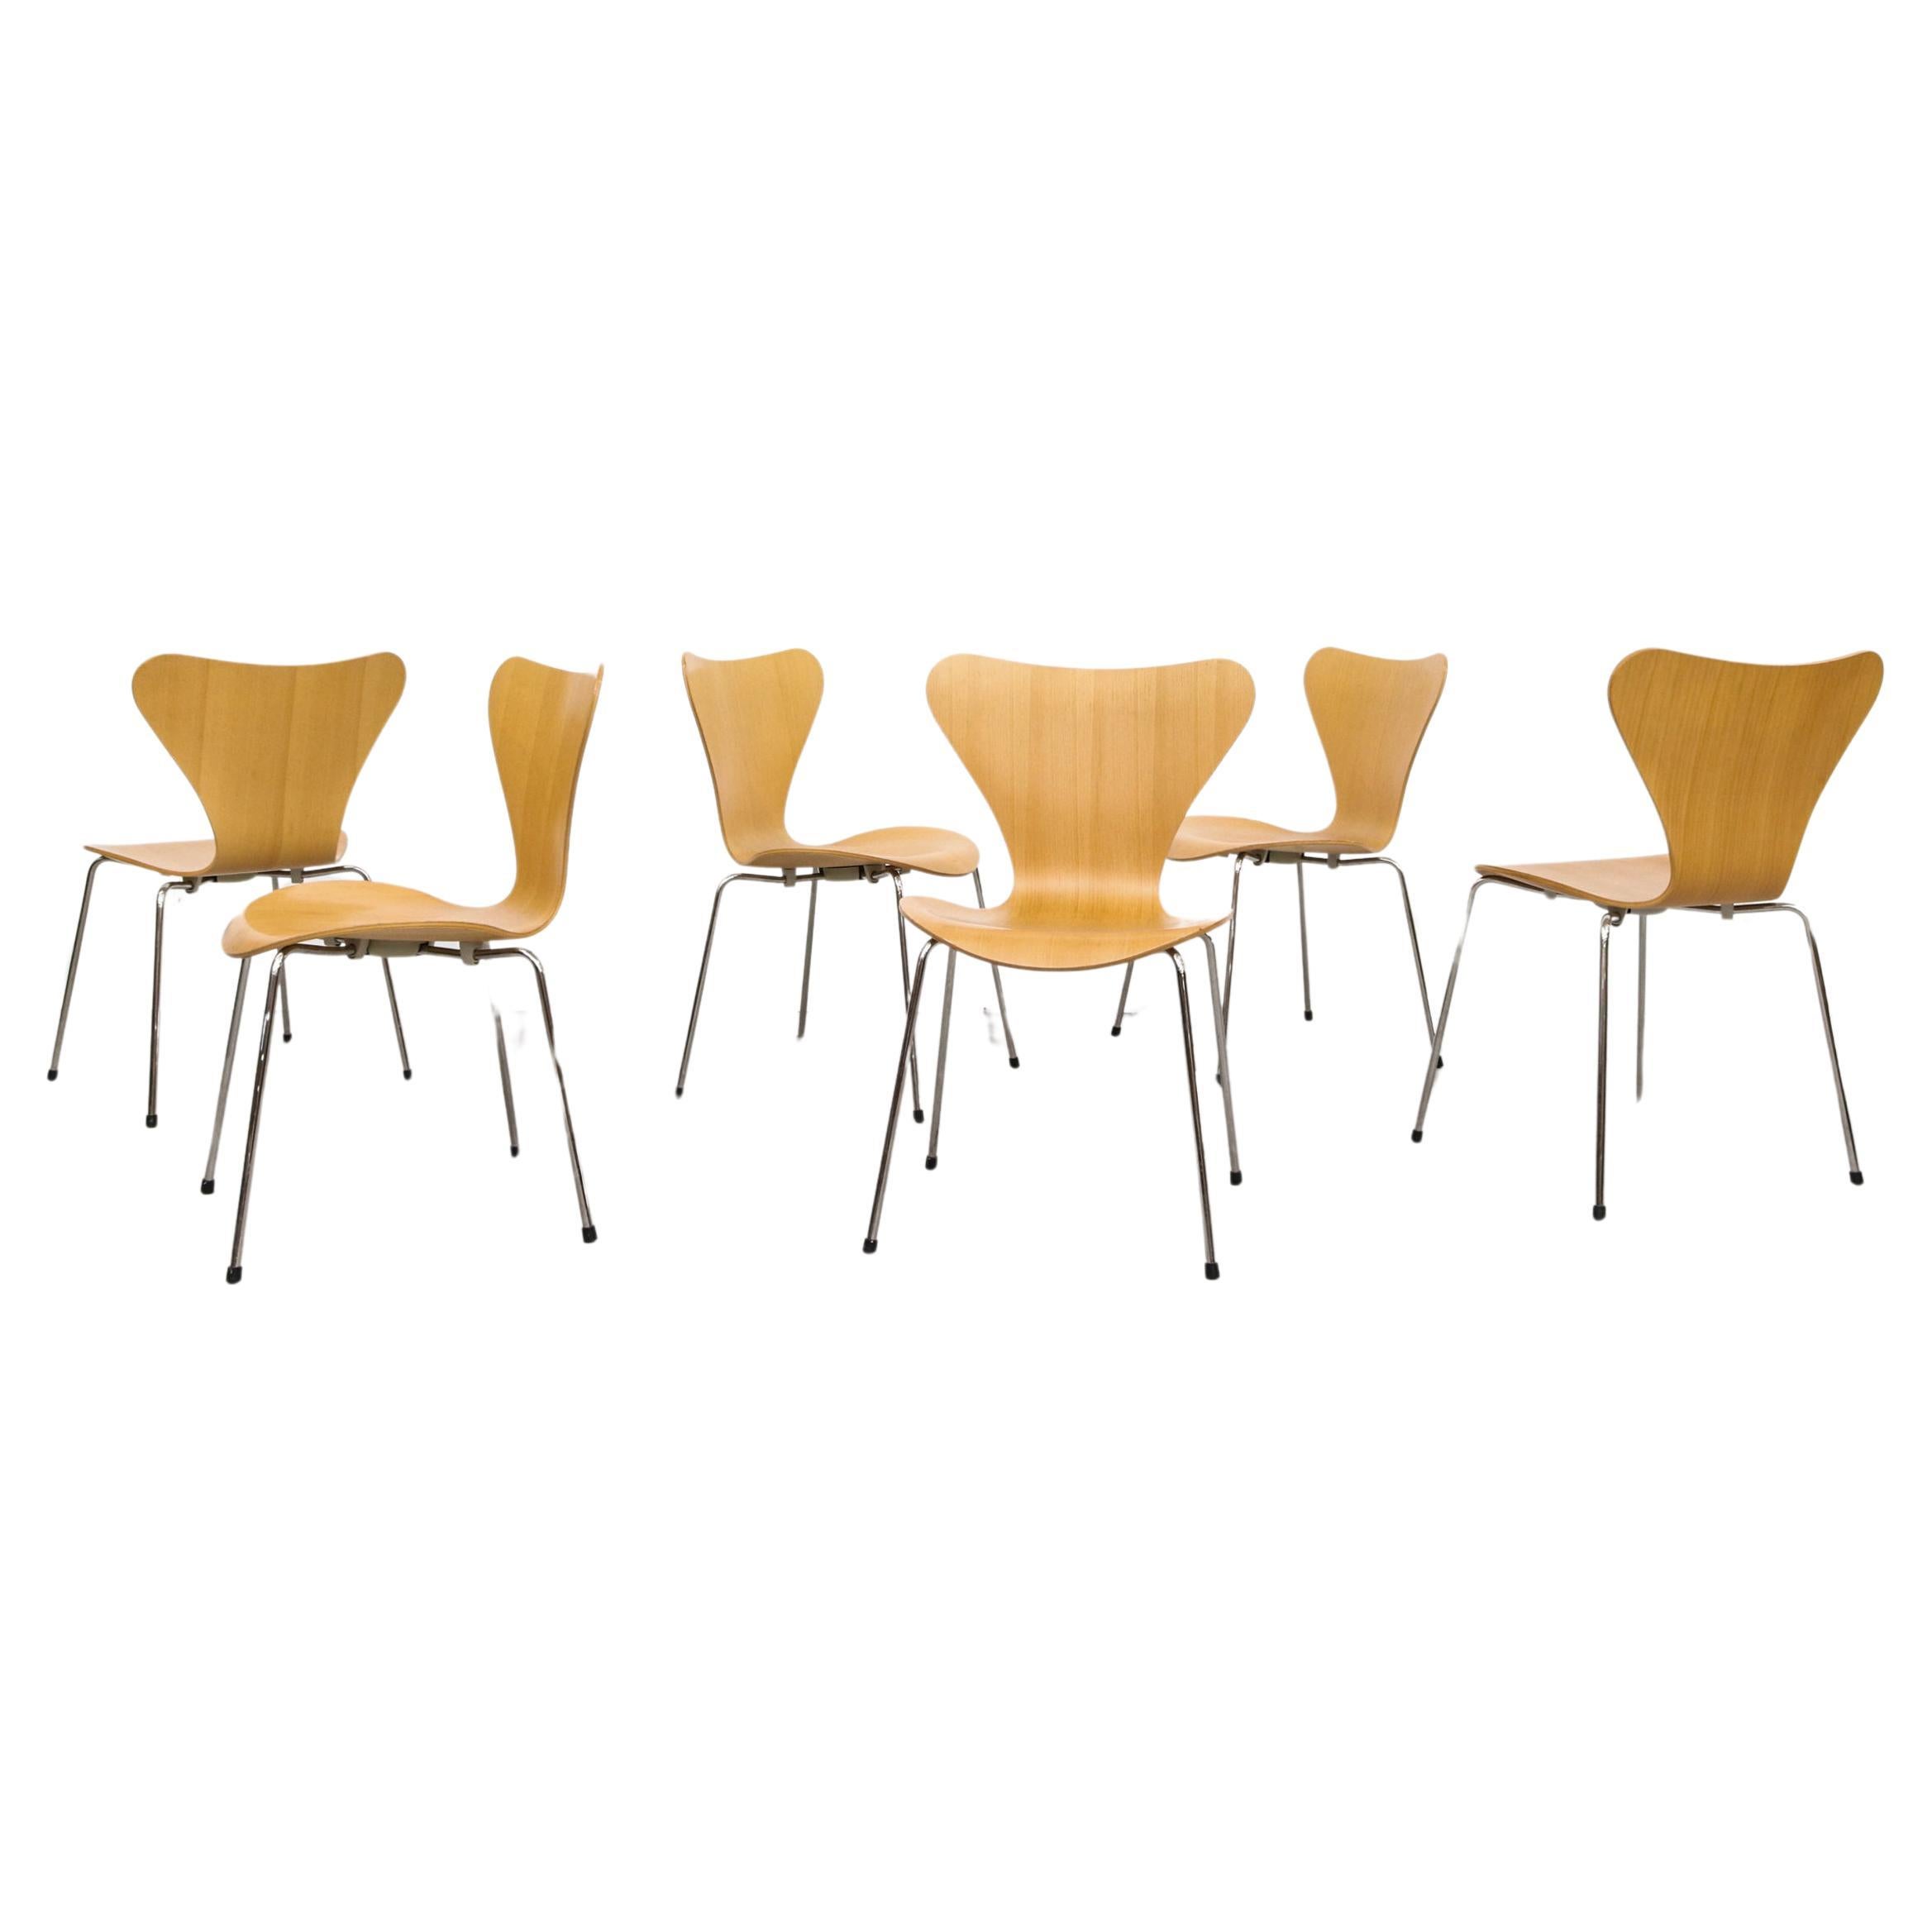 Arne Jacobsen "Series 7" Stackable Chairs for Fritz Hansen